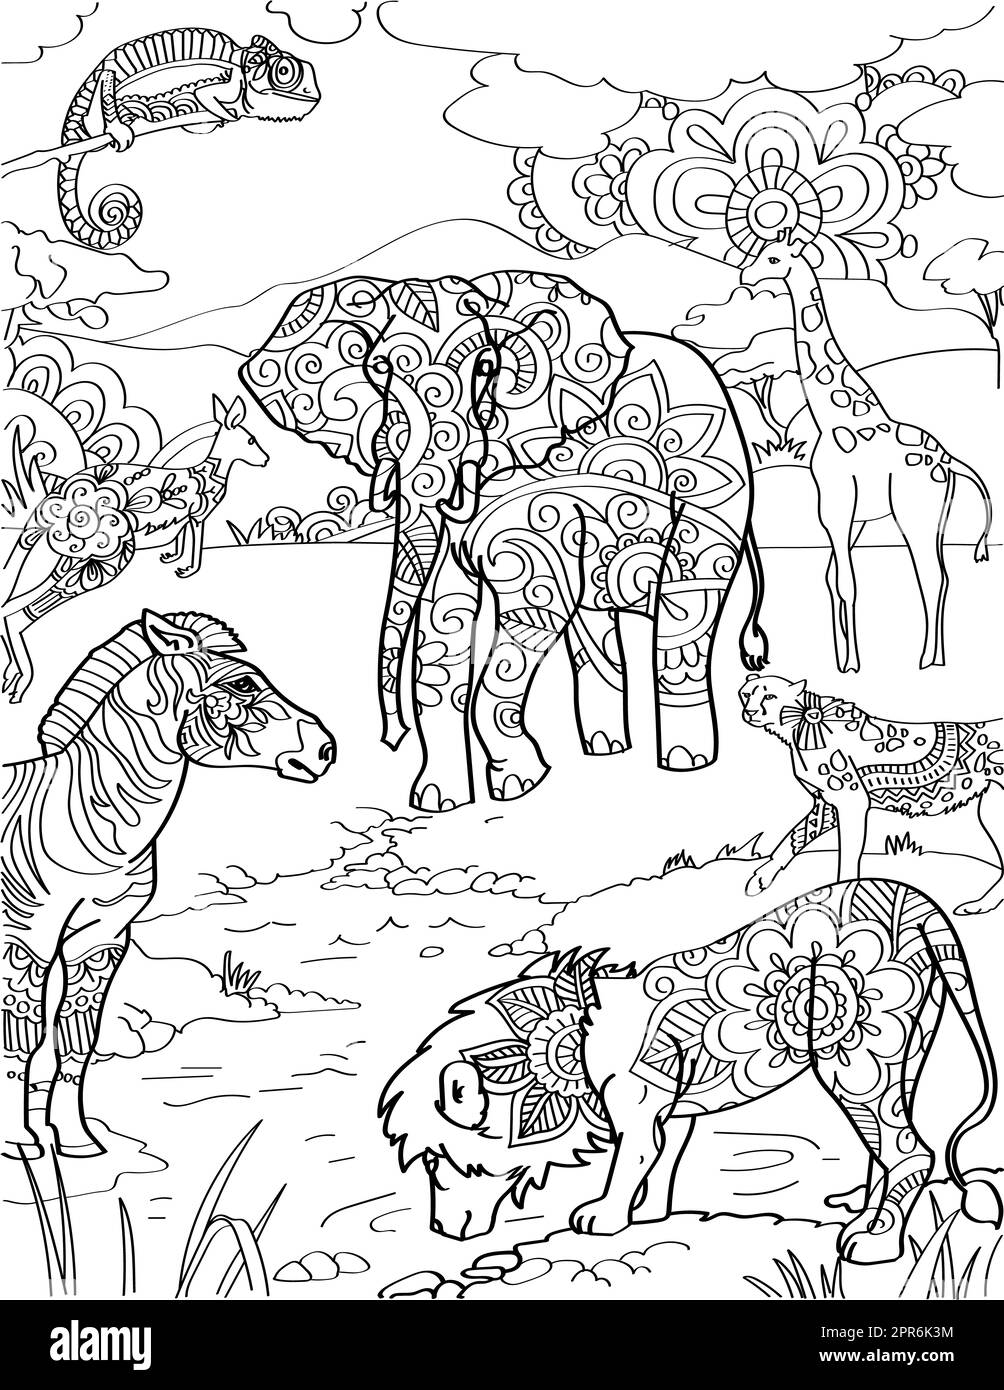 Verschiedene Tiere Neben Dem Lion Zebra-Känguru-See. Stockfoto